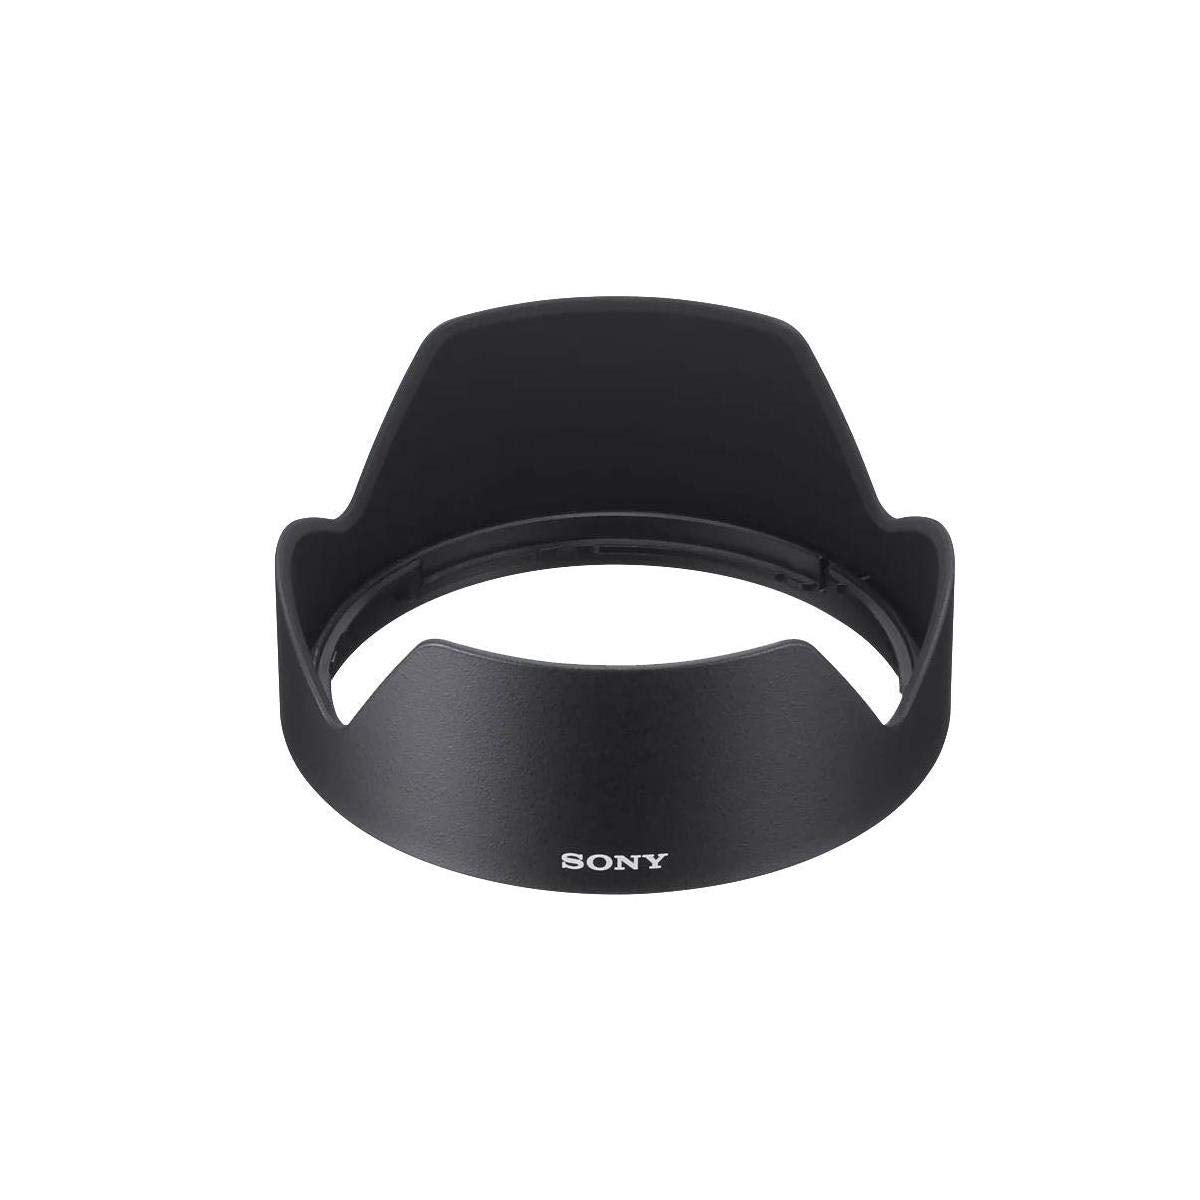 Sony Lens Hood for SEL1655G